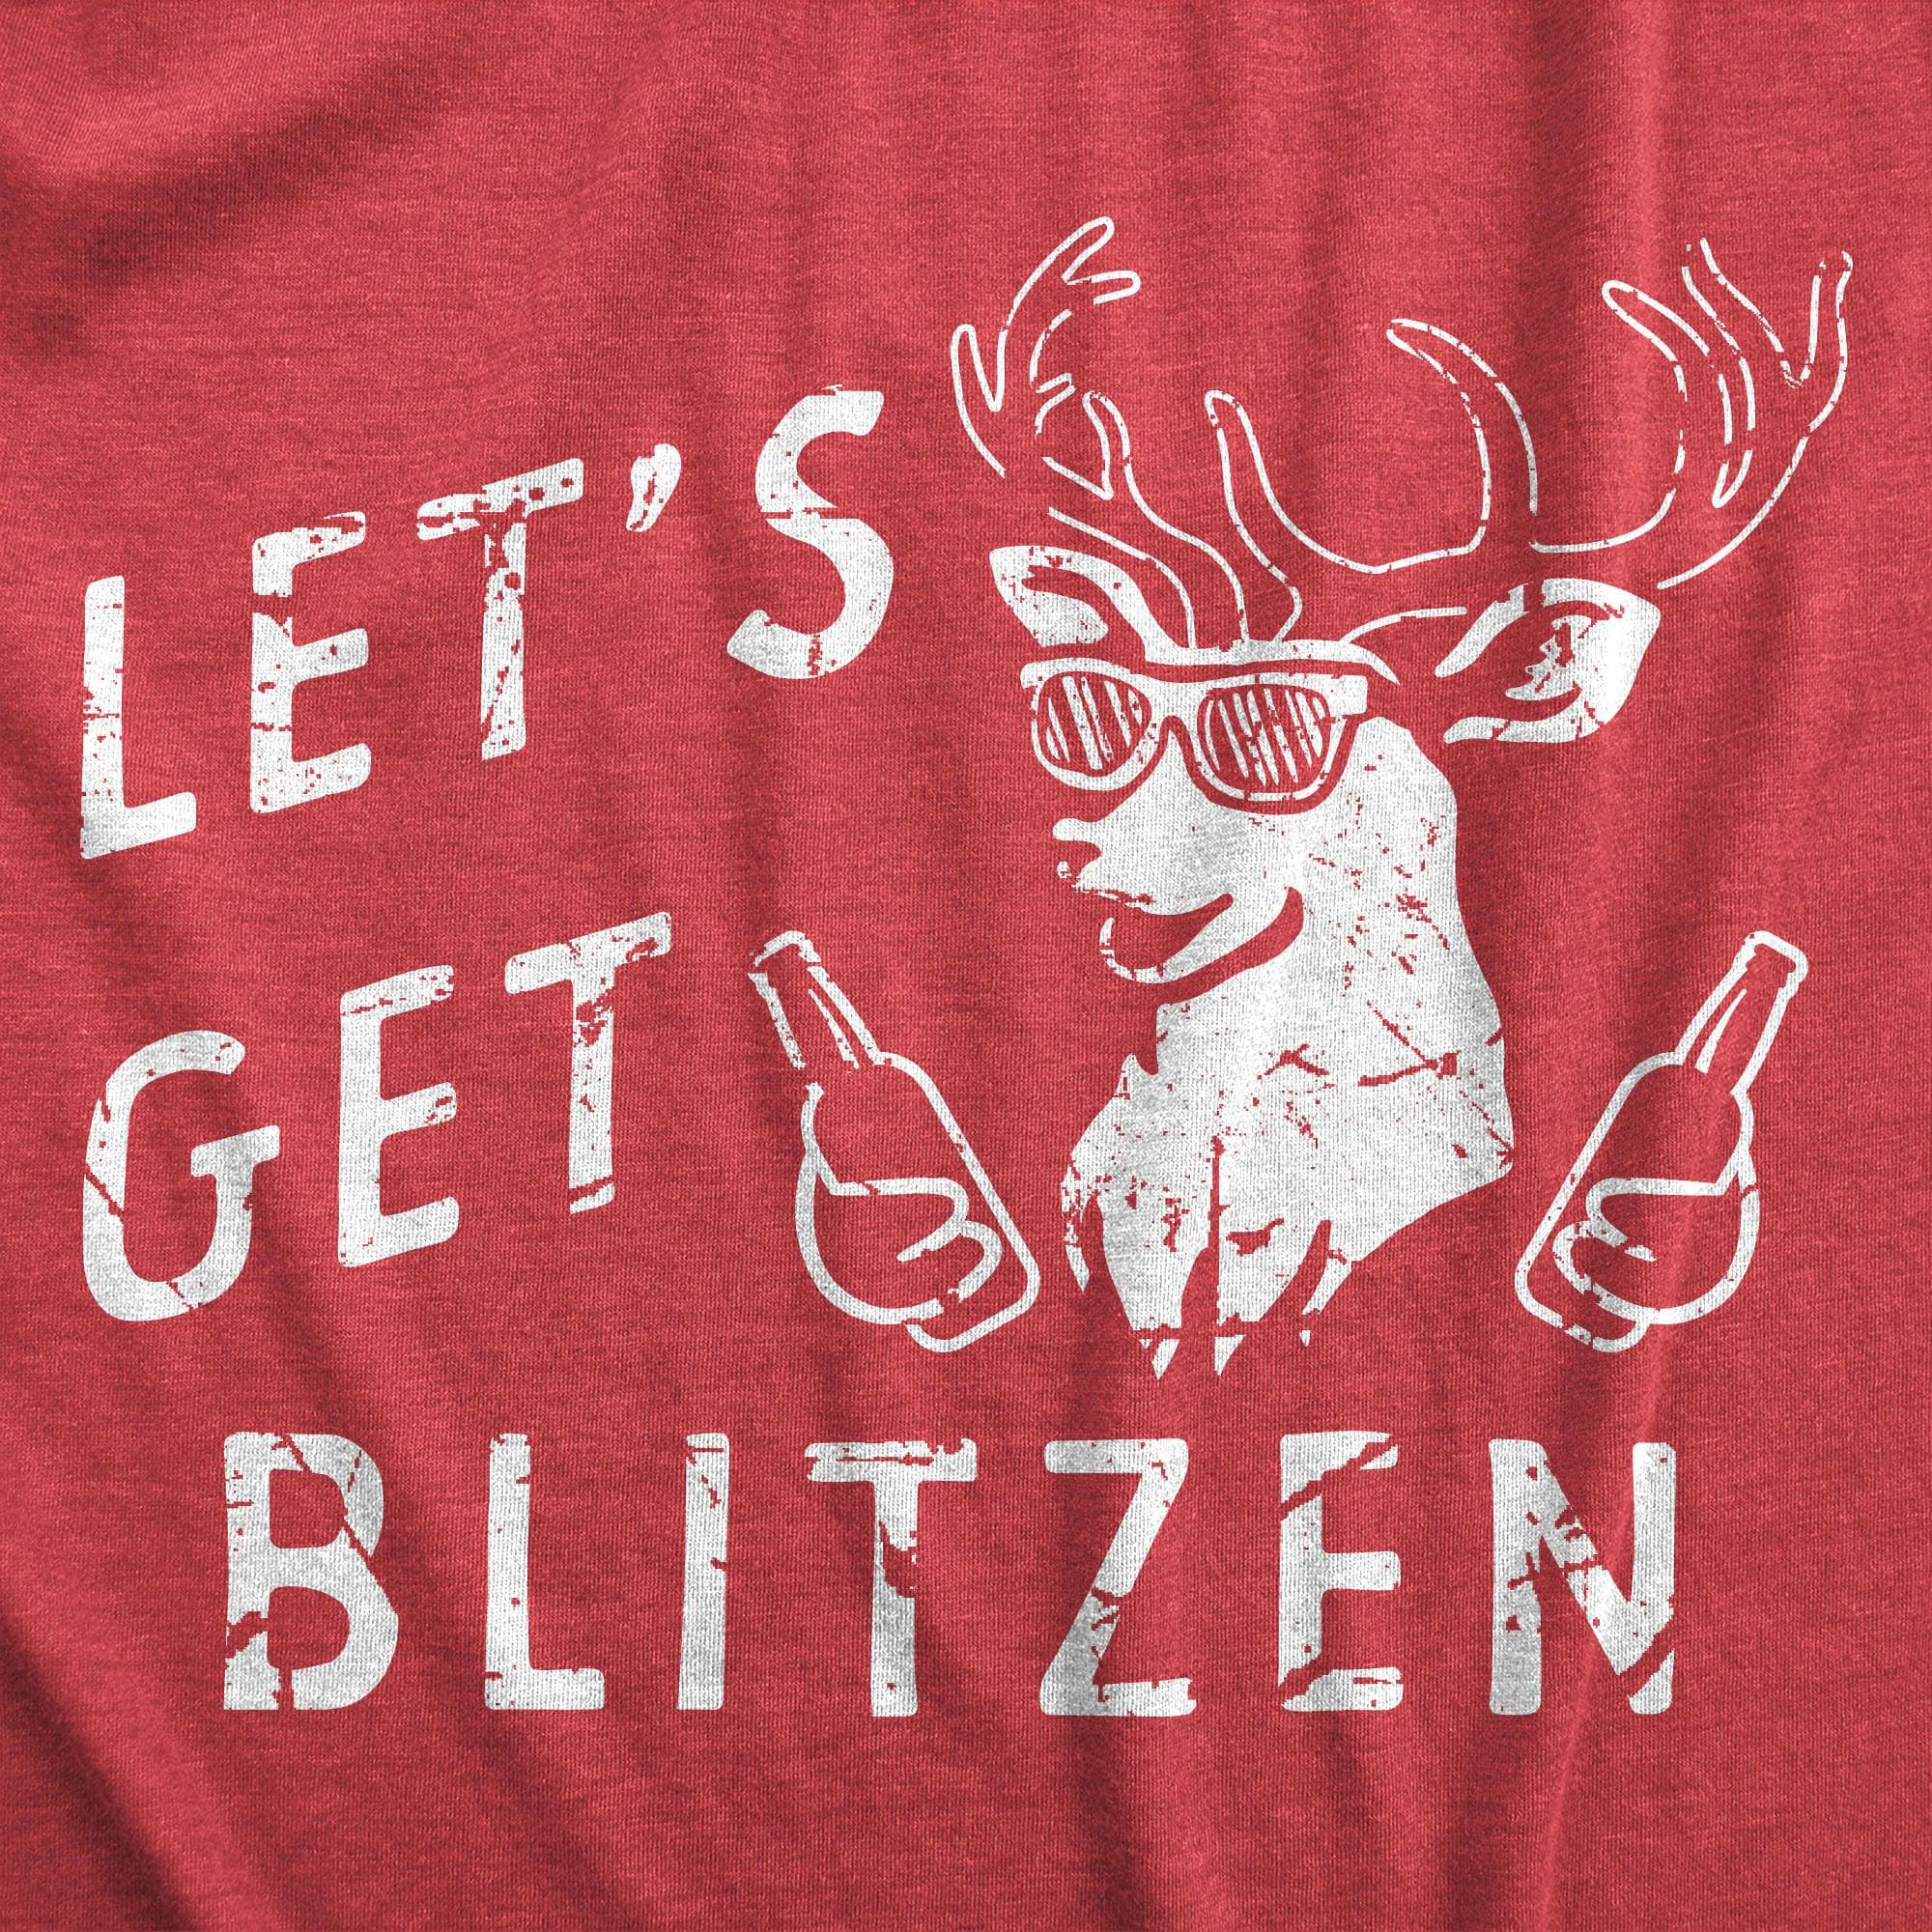 Lets Get Blitzen Men's Tshirt  -  Crazy Dog T-Shirts